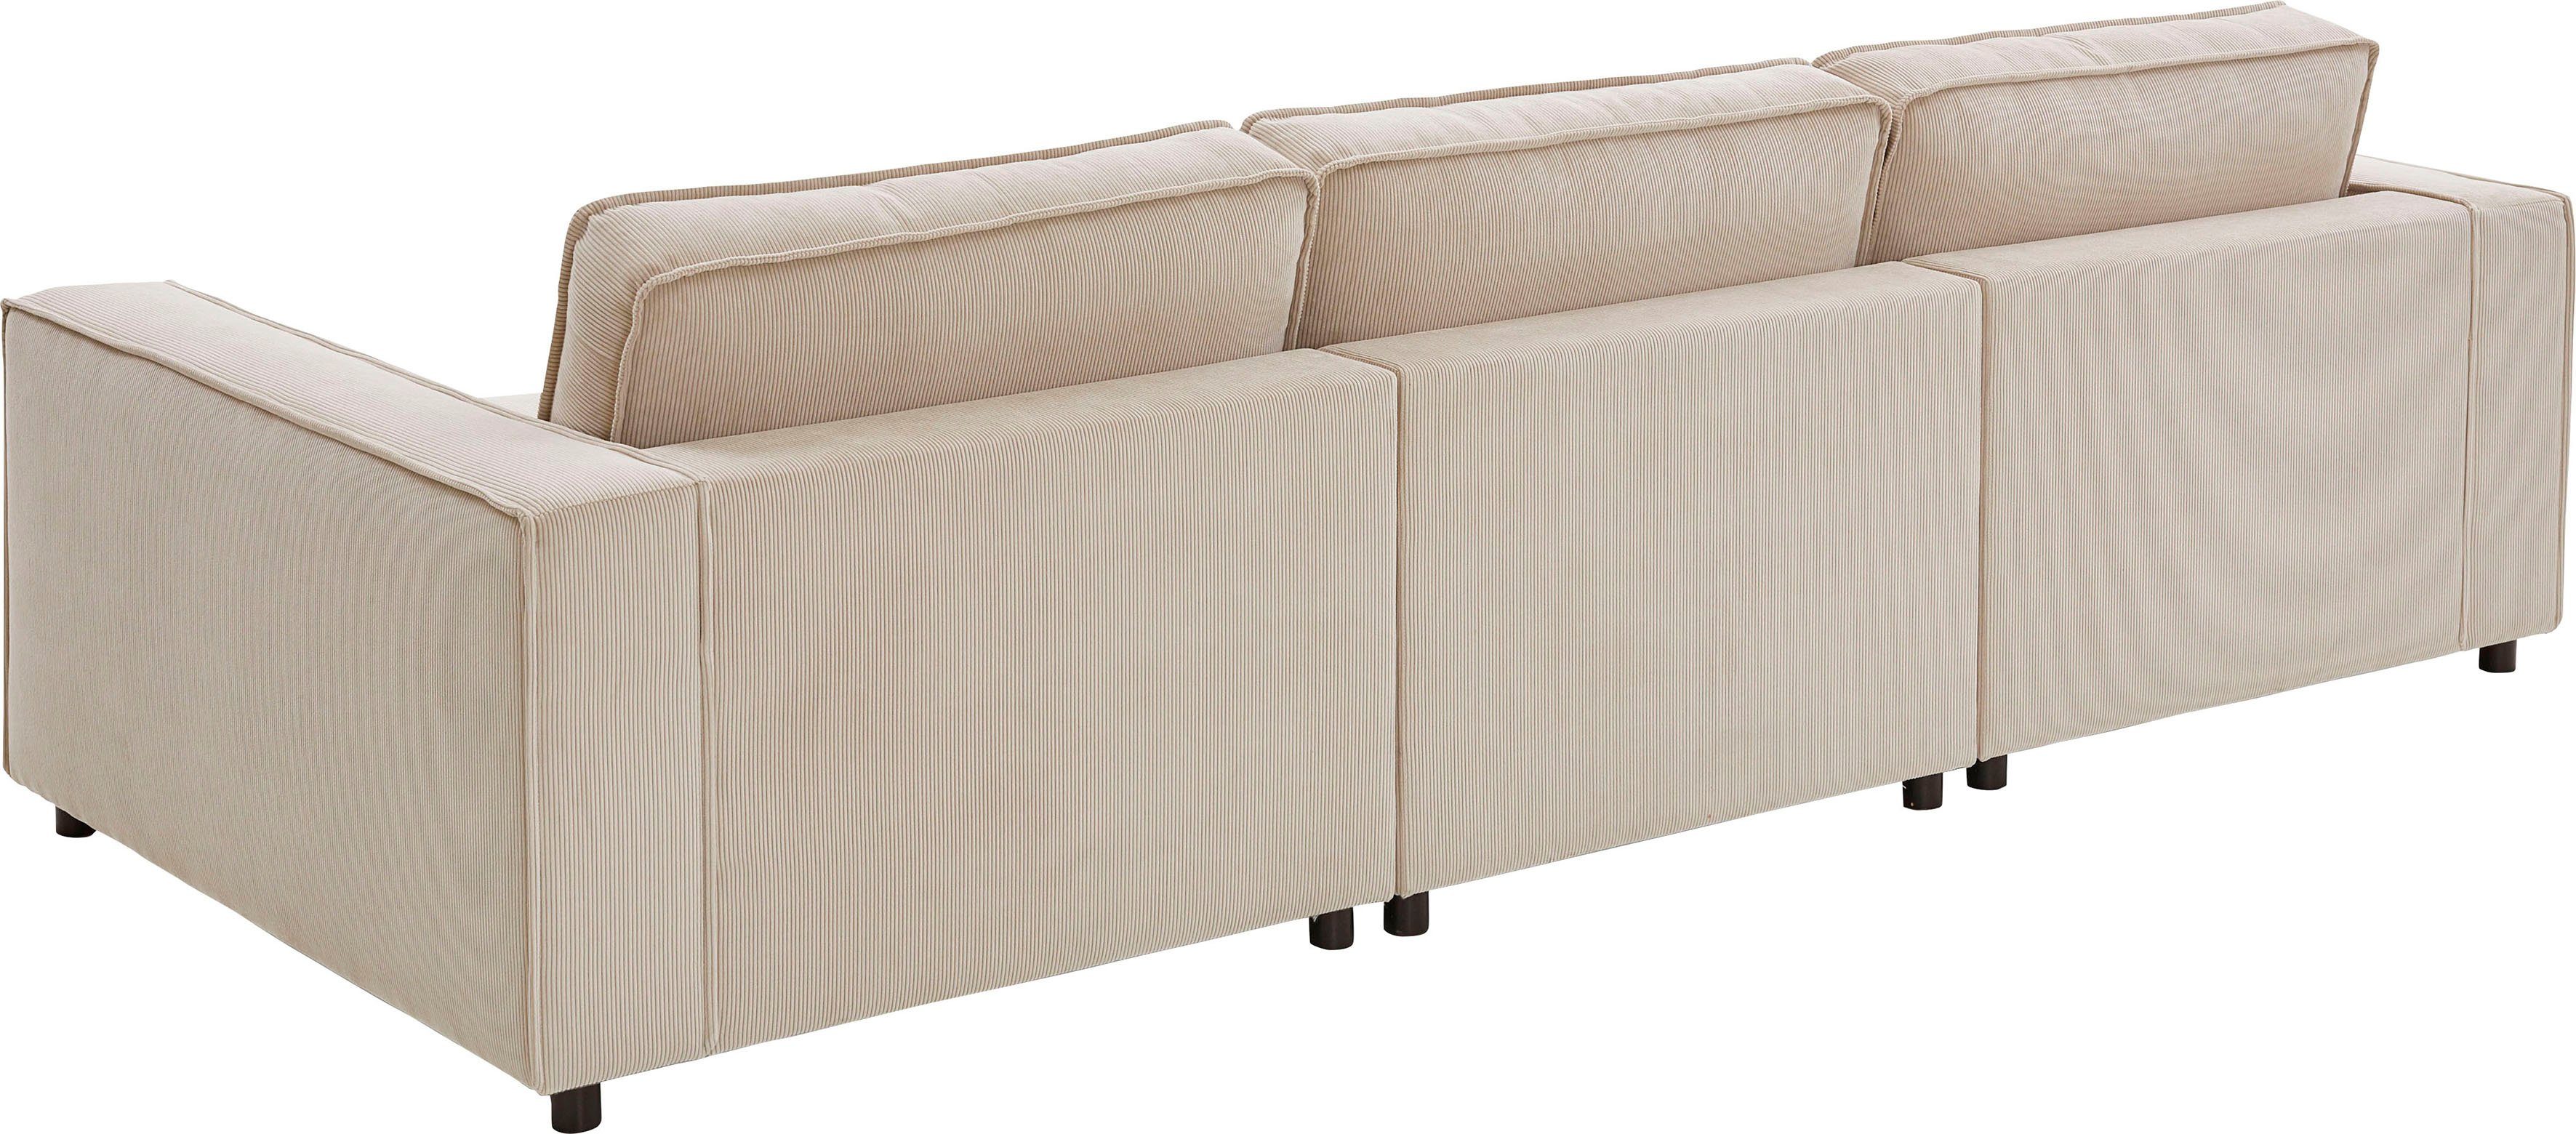 ATLANTIC home collection 3-Sitzer Valan, mit XXL-Sitzfläche, mit frei Cord-Bezug, creme stellbar, Wellenunterfederung